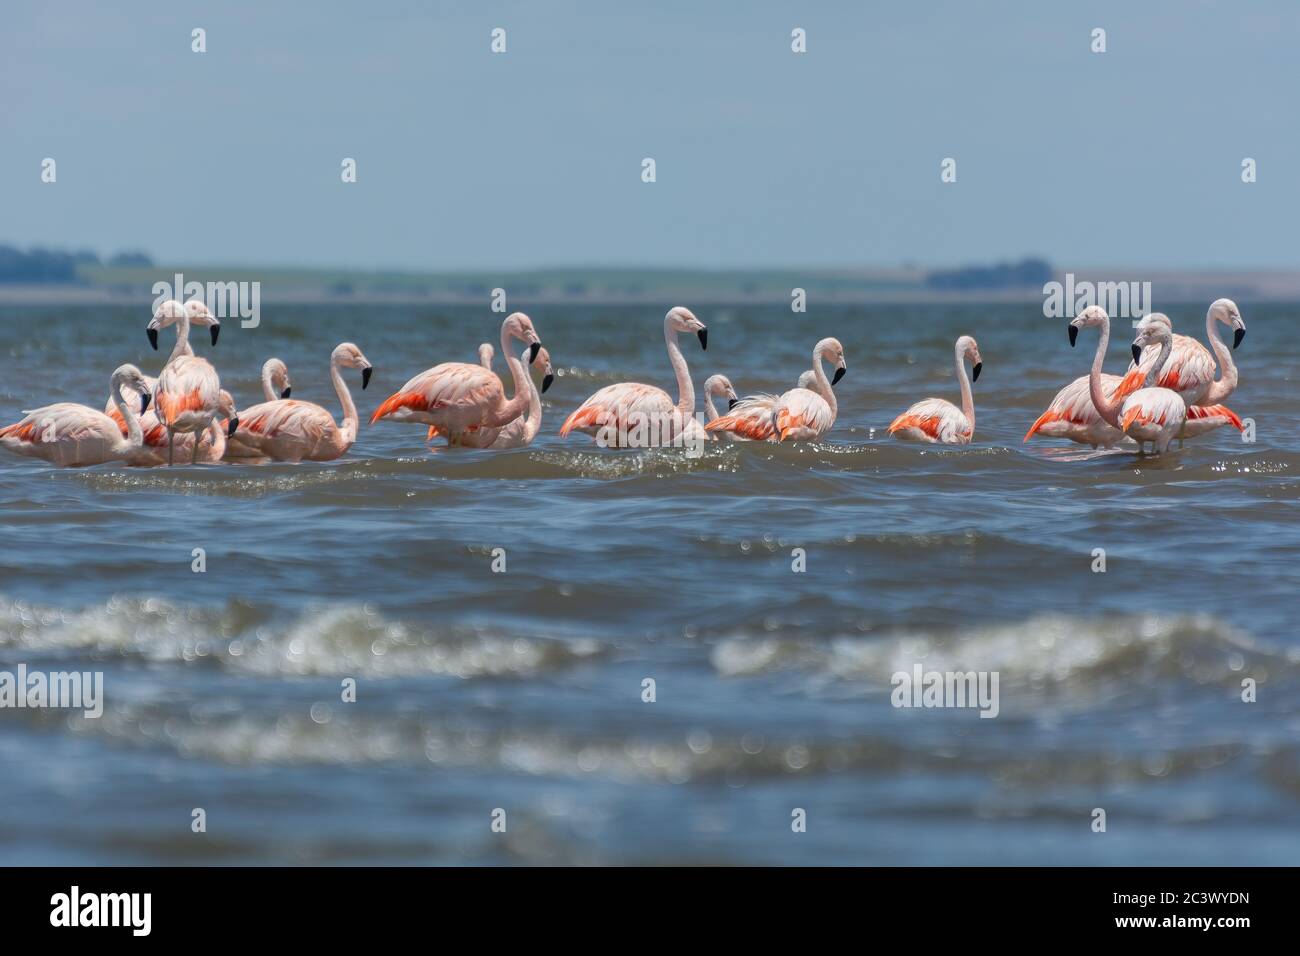 Flamingo in Epecuen Stock Photo